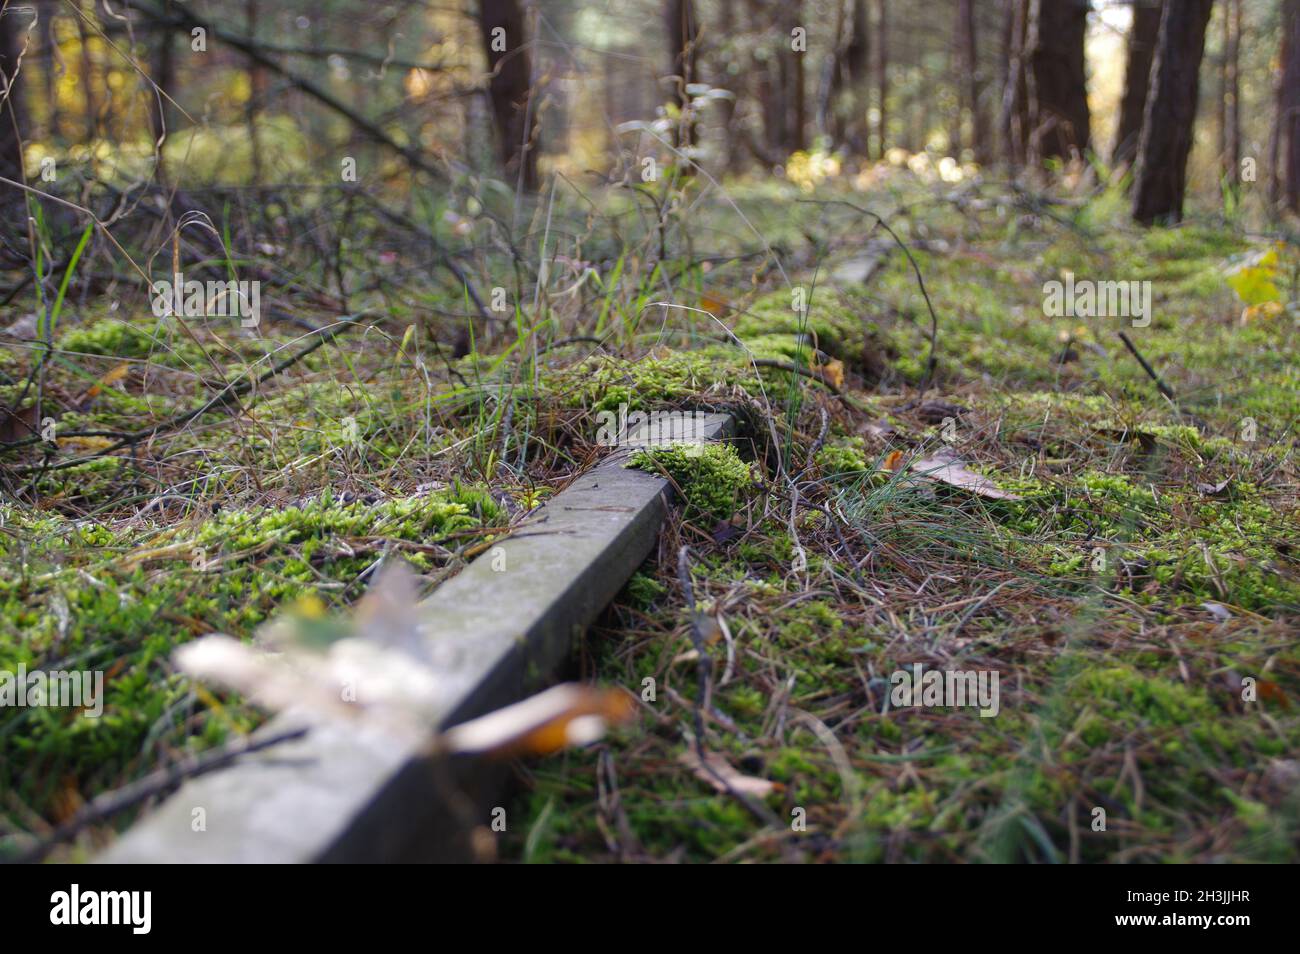 Una vía de ferrocarril olvidada en el bosque. Moss en un carril oxidado. Camino abandonado. Foto de stock